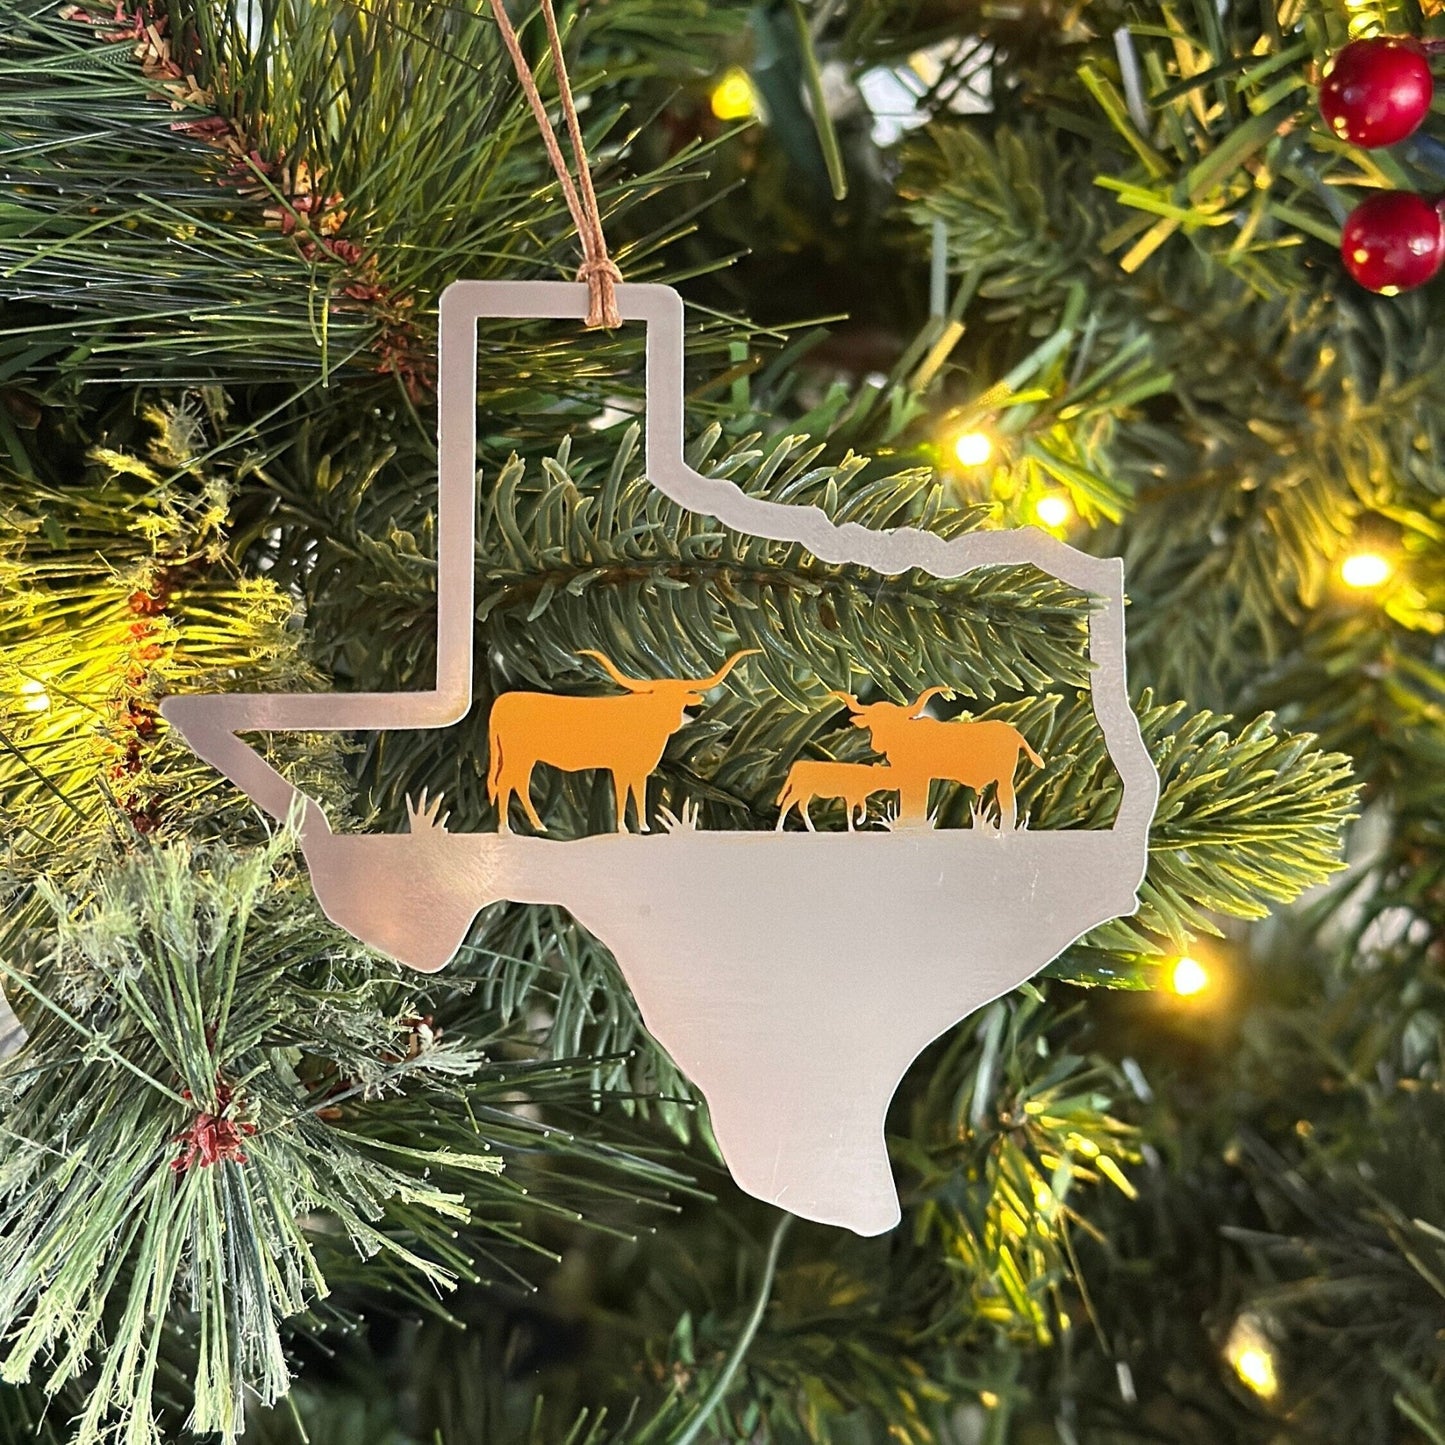 Texas Longhorns Ornament - Authenticaa